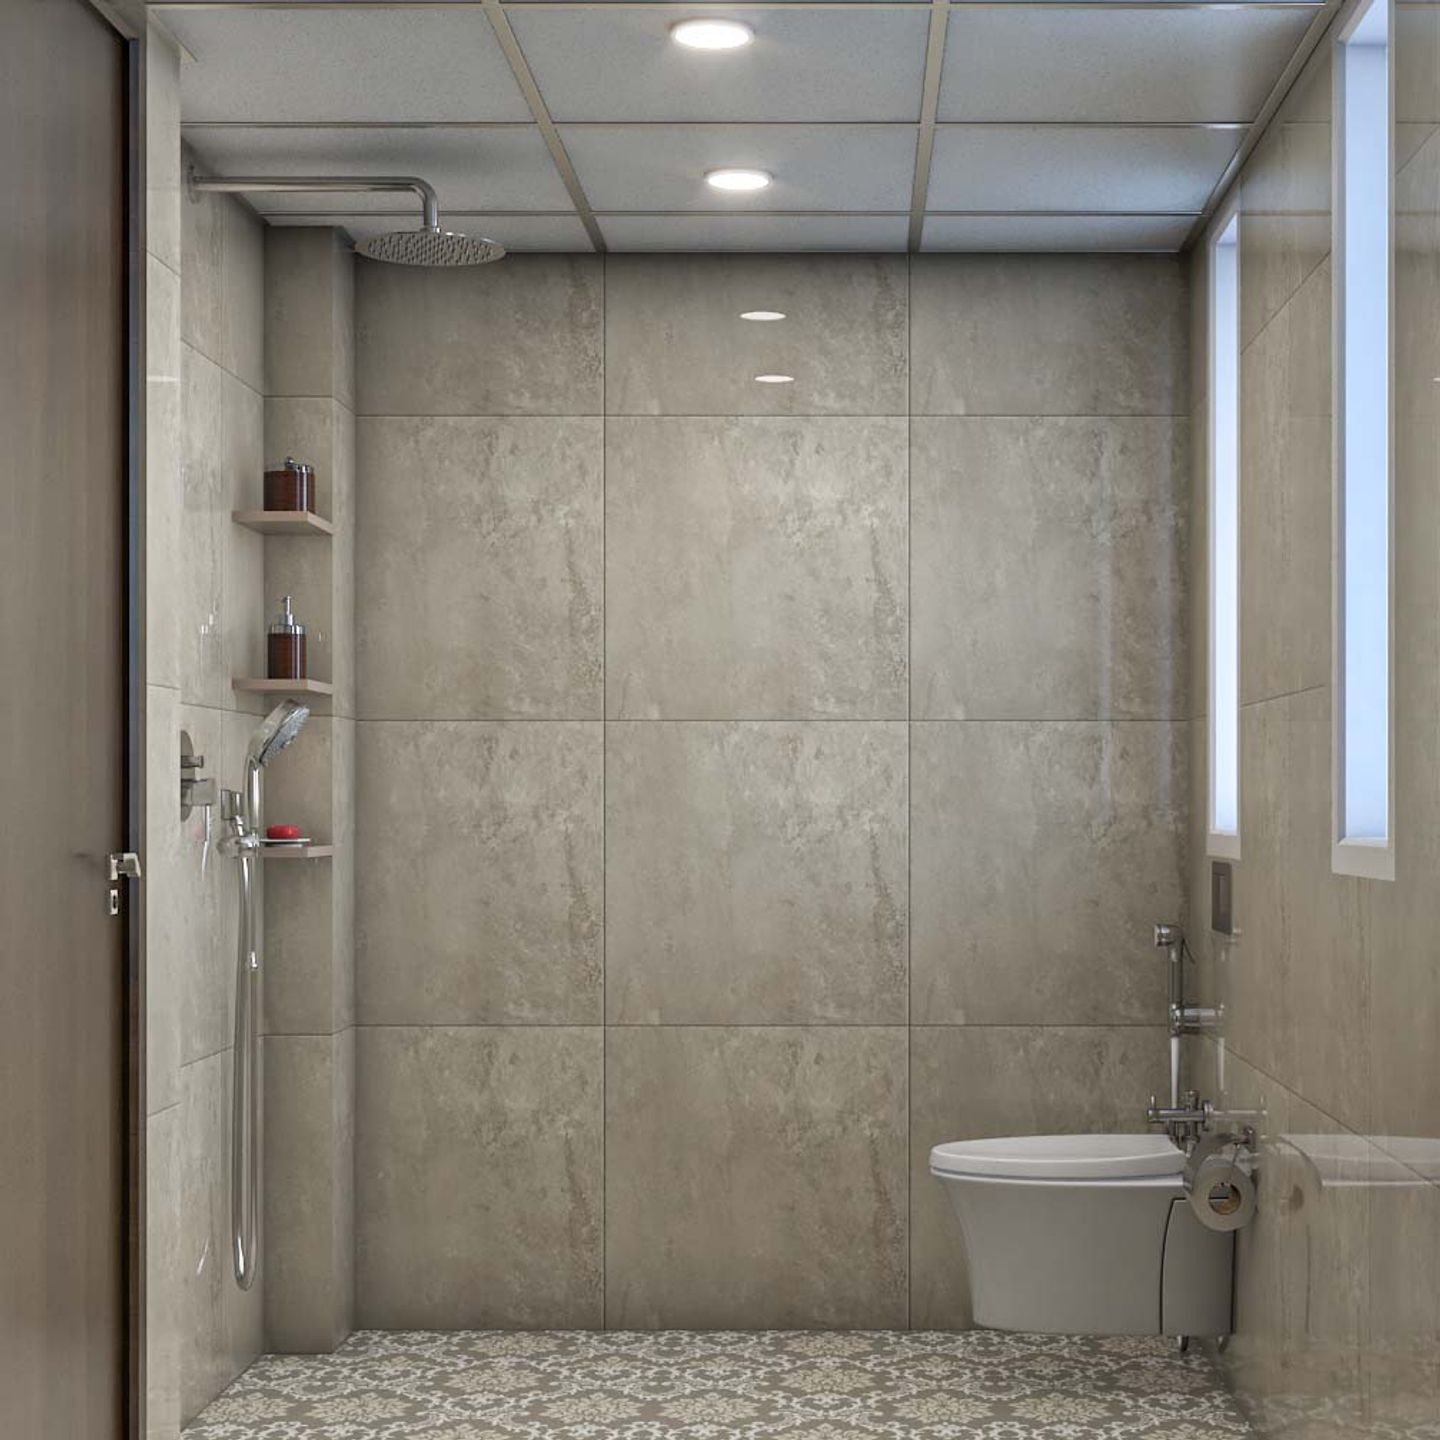 Beige Bathroom Design With Overhead Lights - Livspace